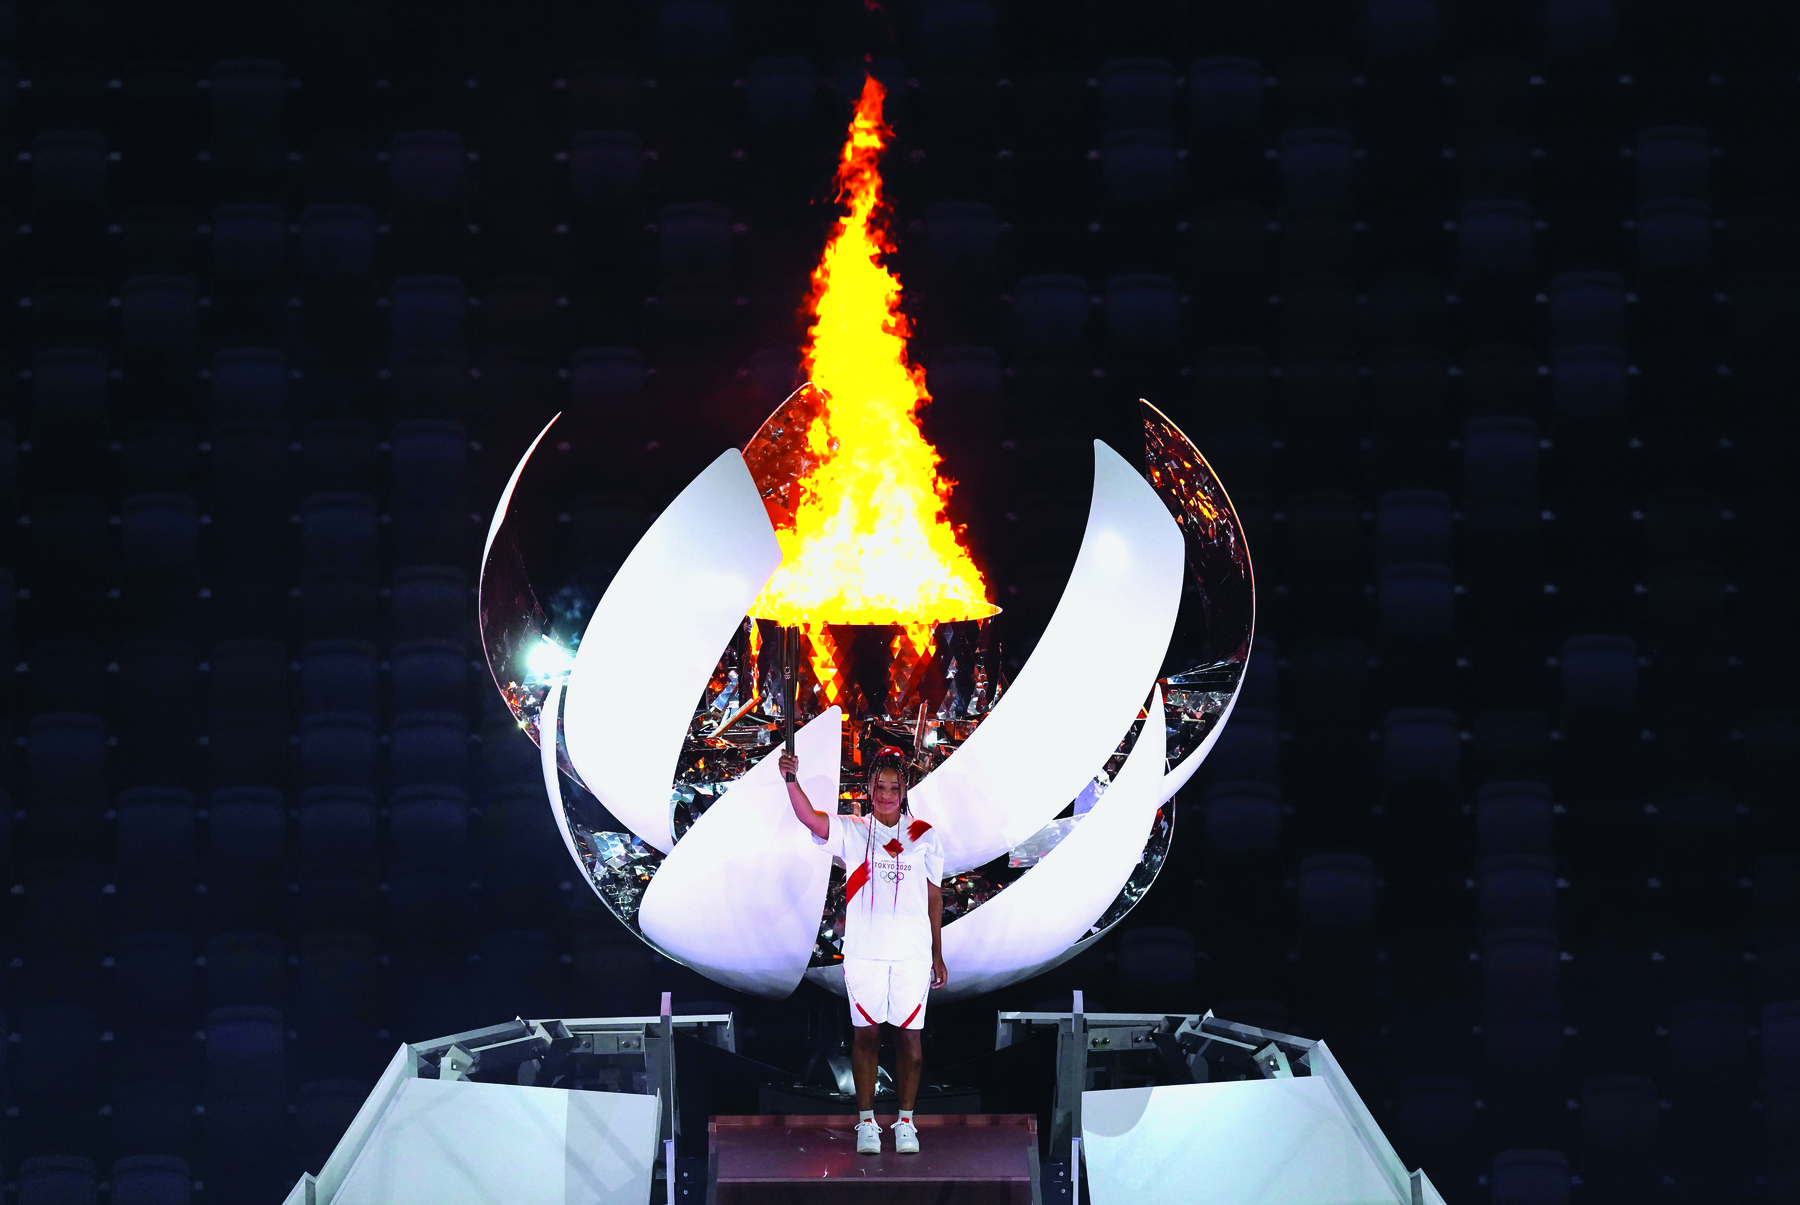 Fotografia. Mulher ergue tocha olímpica acesa. Ela veste bermuda e camiseta branca. Atrás dela a grande pira de fogo dentro de uma estrutura arredondada.